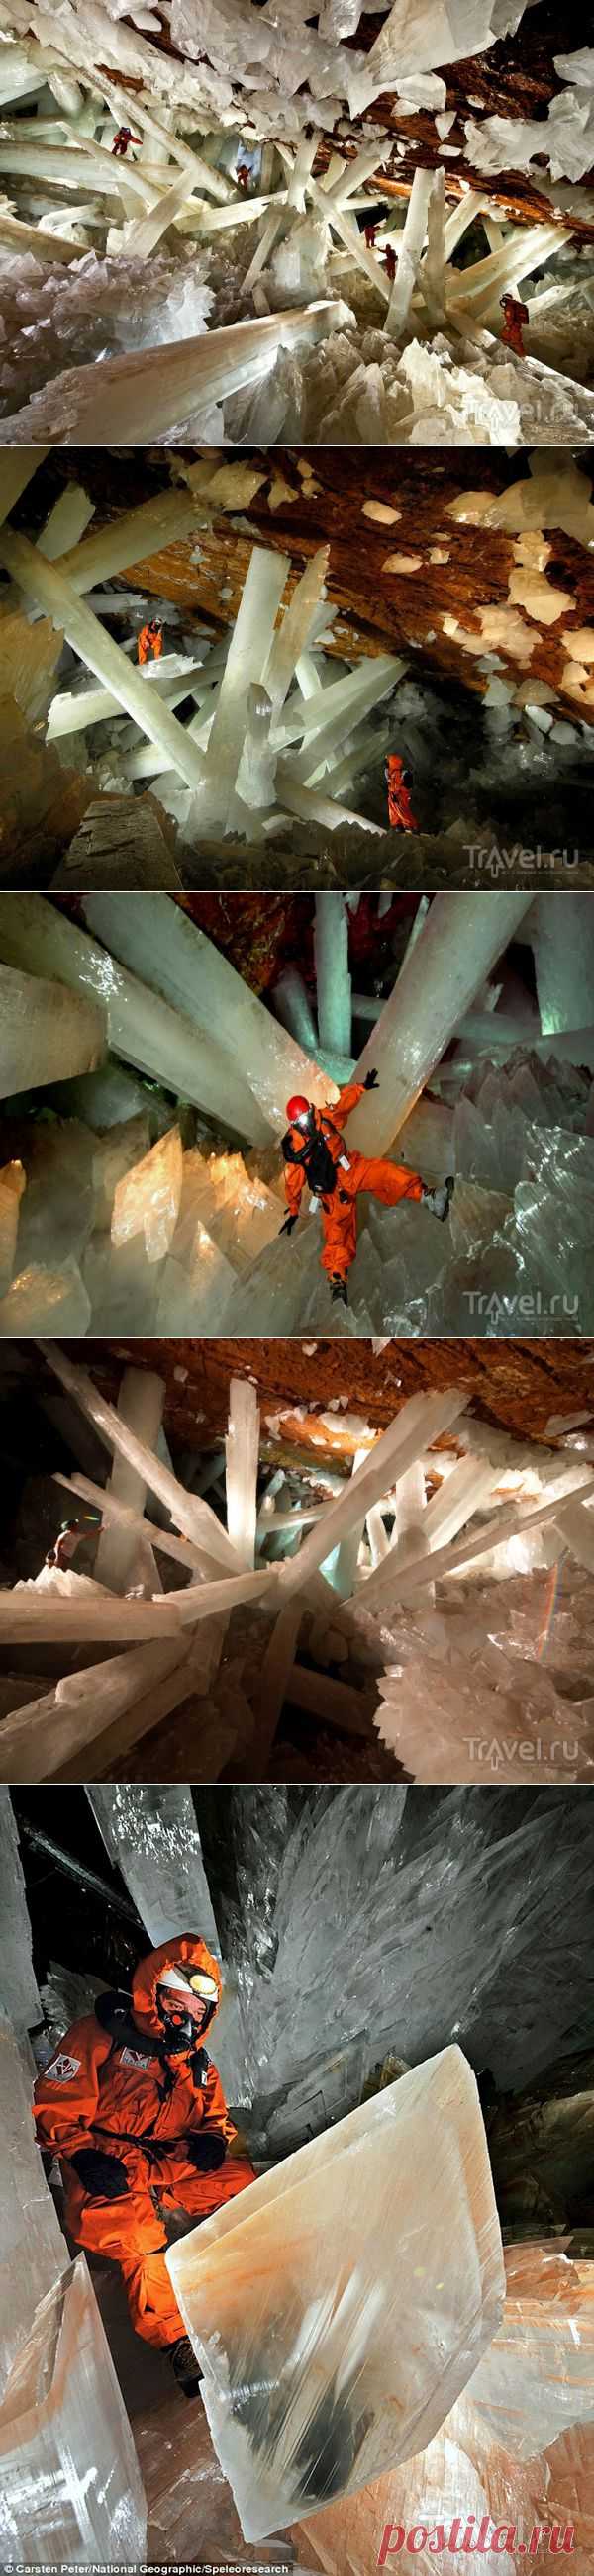 Гигантские кристаллы в мексиканской пещере - Познавательно